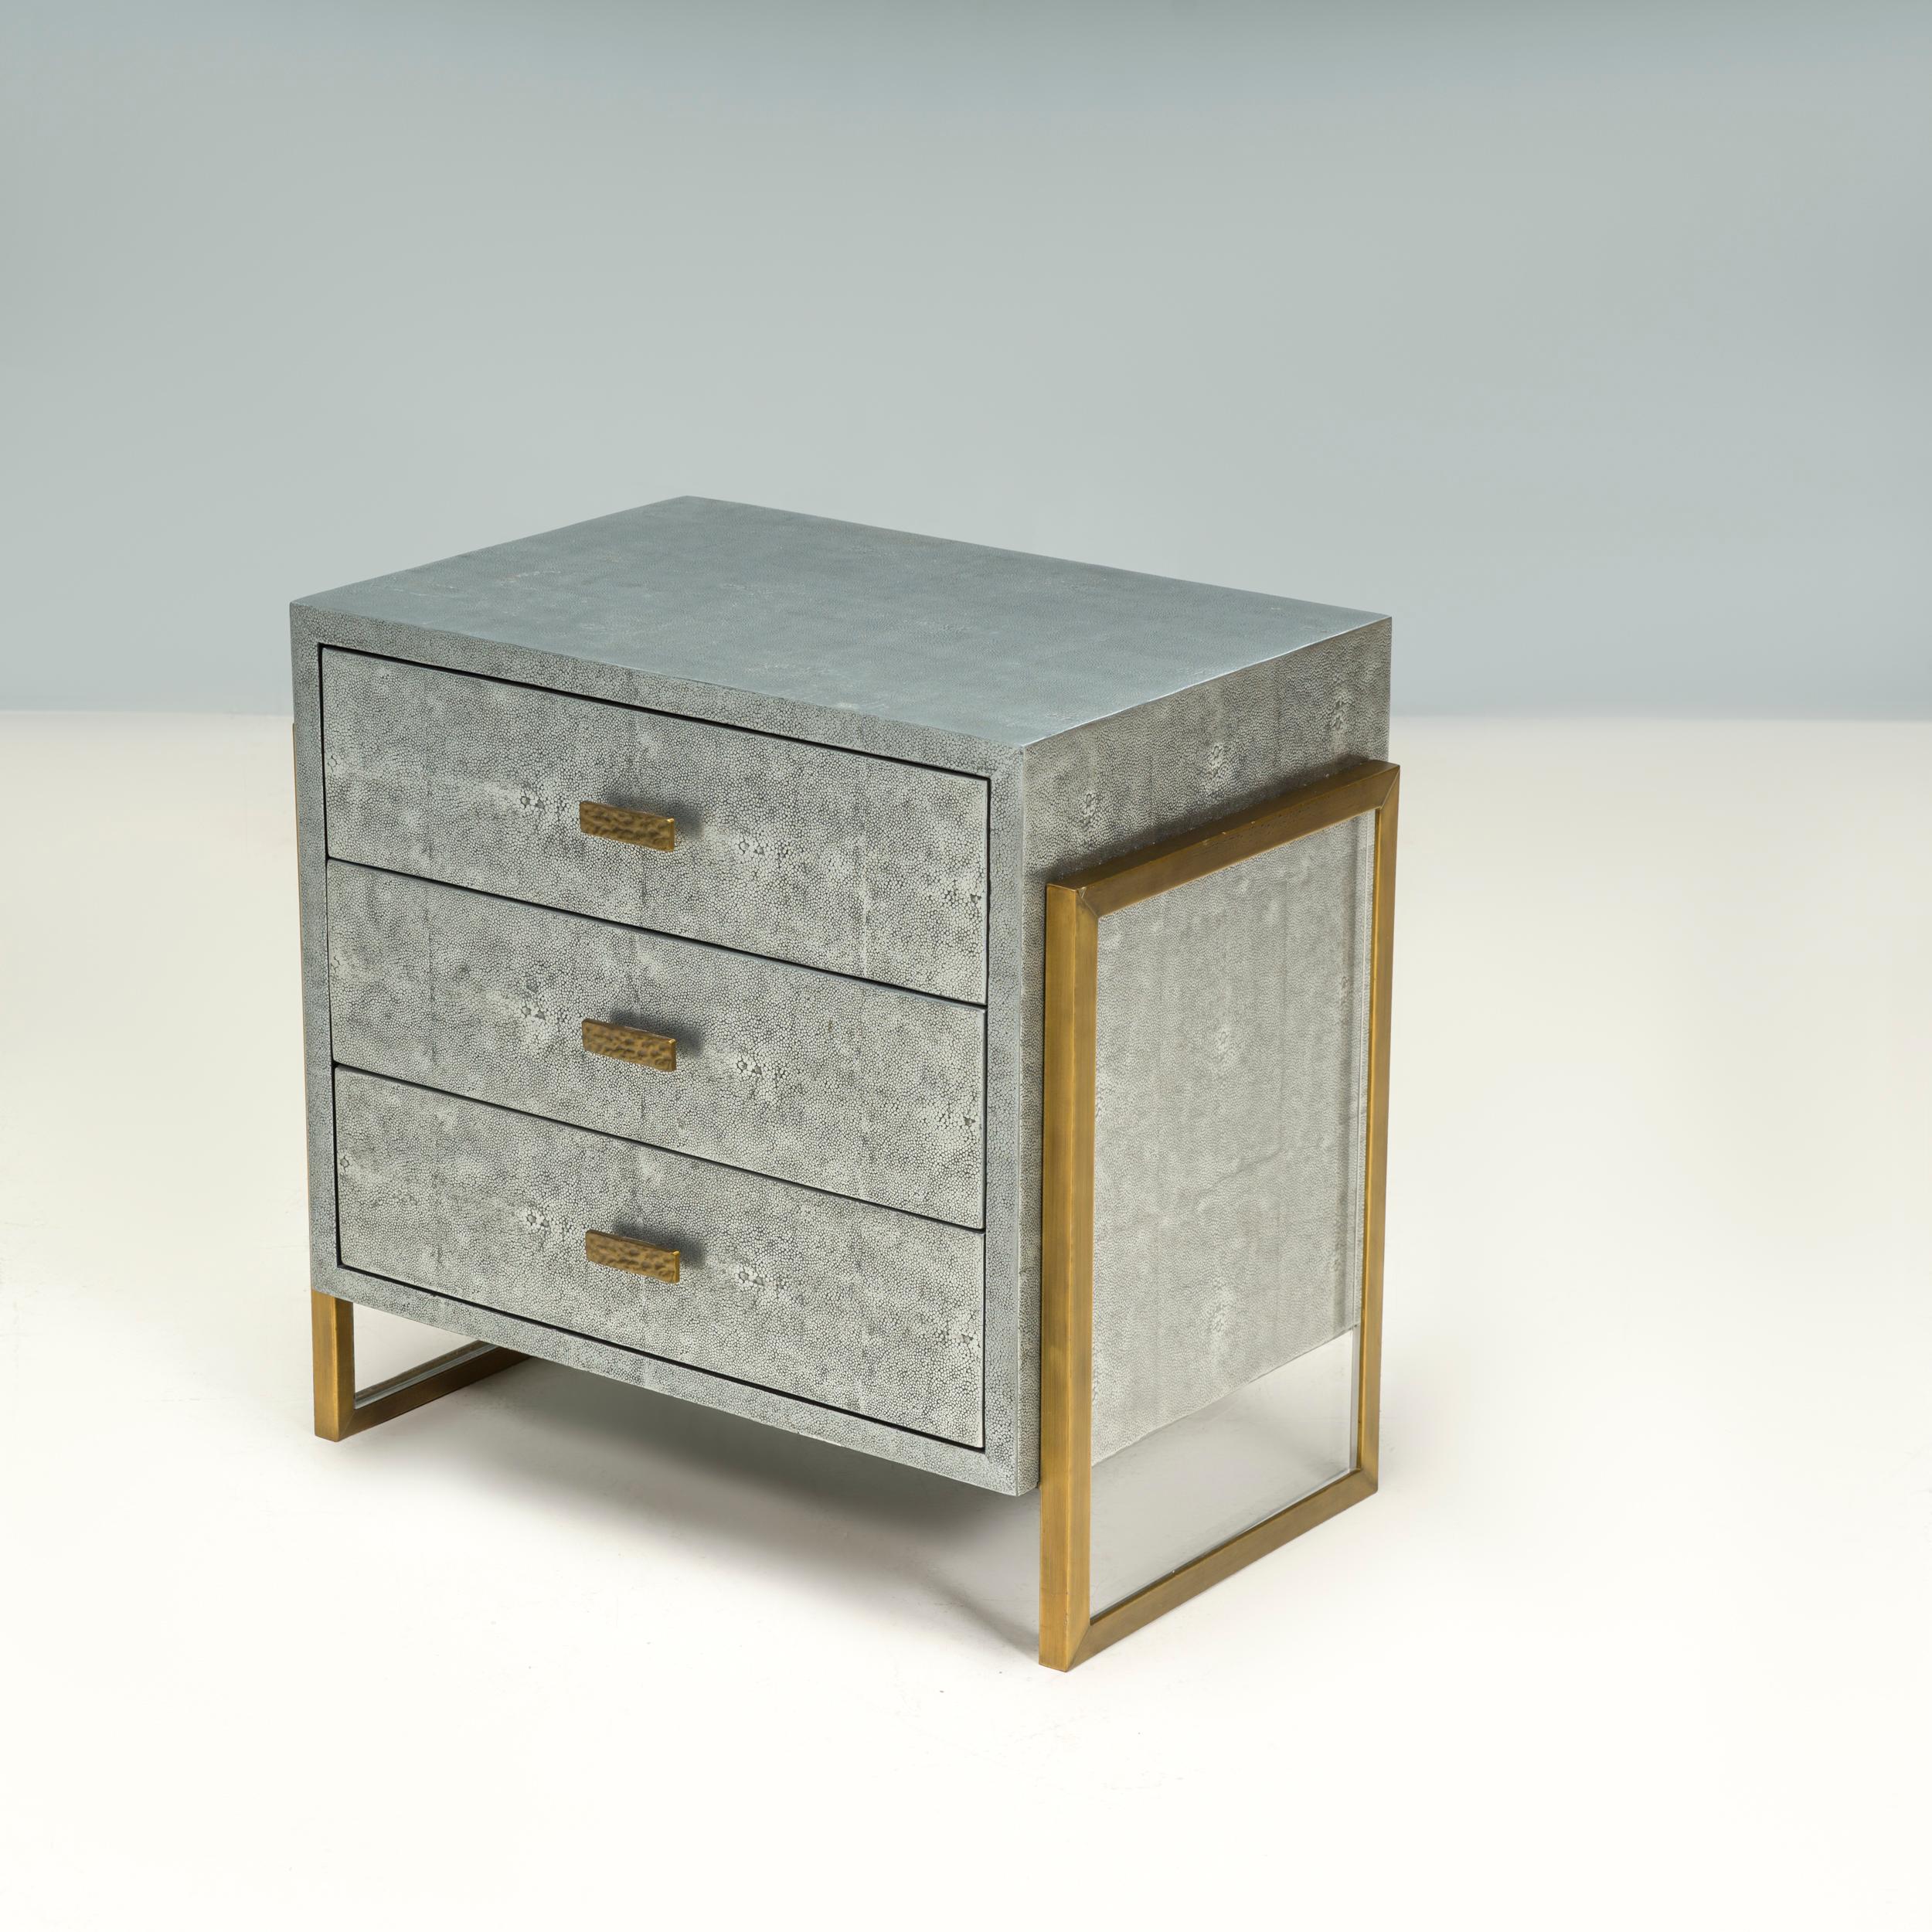 Julian Chichester a fondé sa société de design de meubles en 1995, en s'inspirant des formes classiques des XIXe et XXe siècles et en y apportant sa touche personnelle grâce à des finitions et des détails contemporains.

Inspirée par le design des